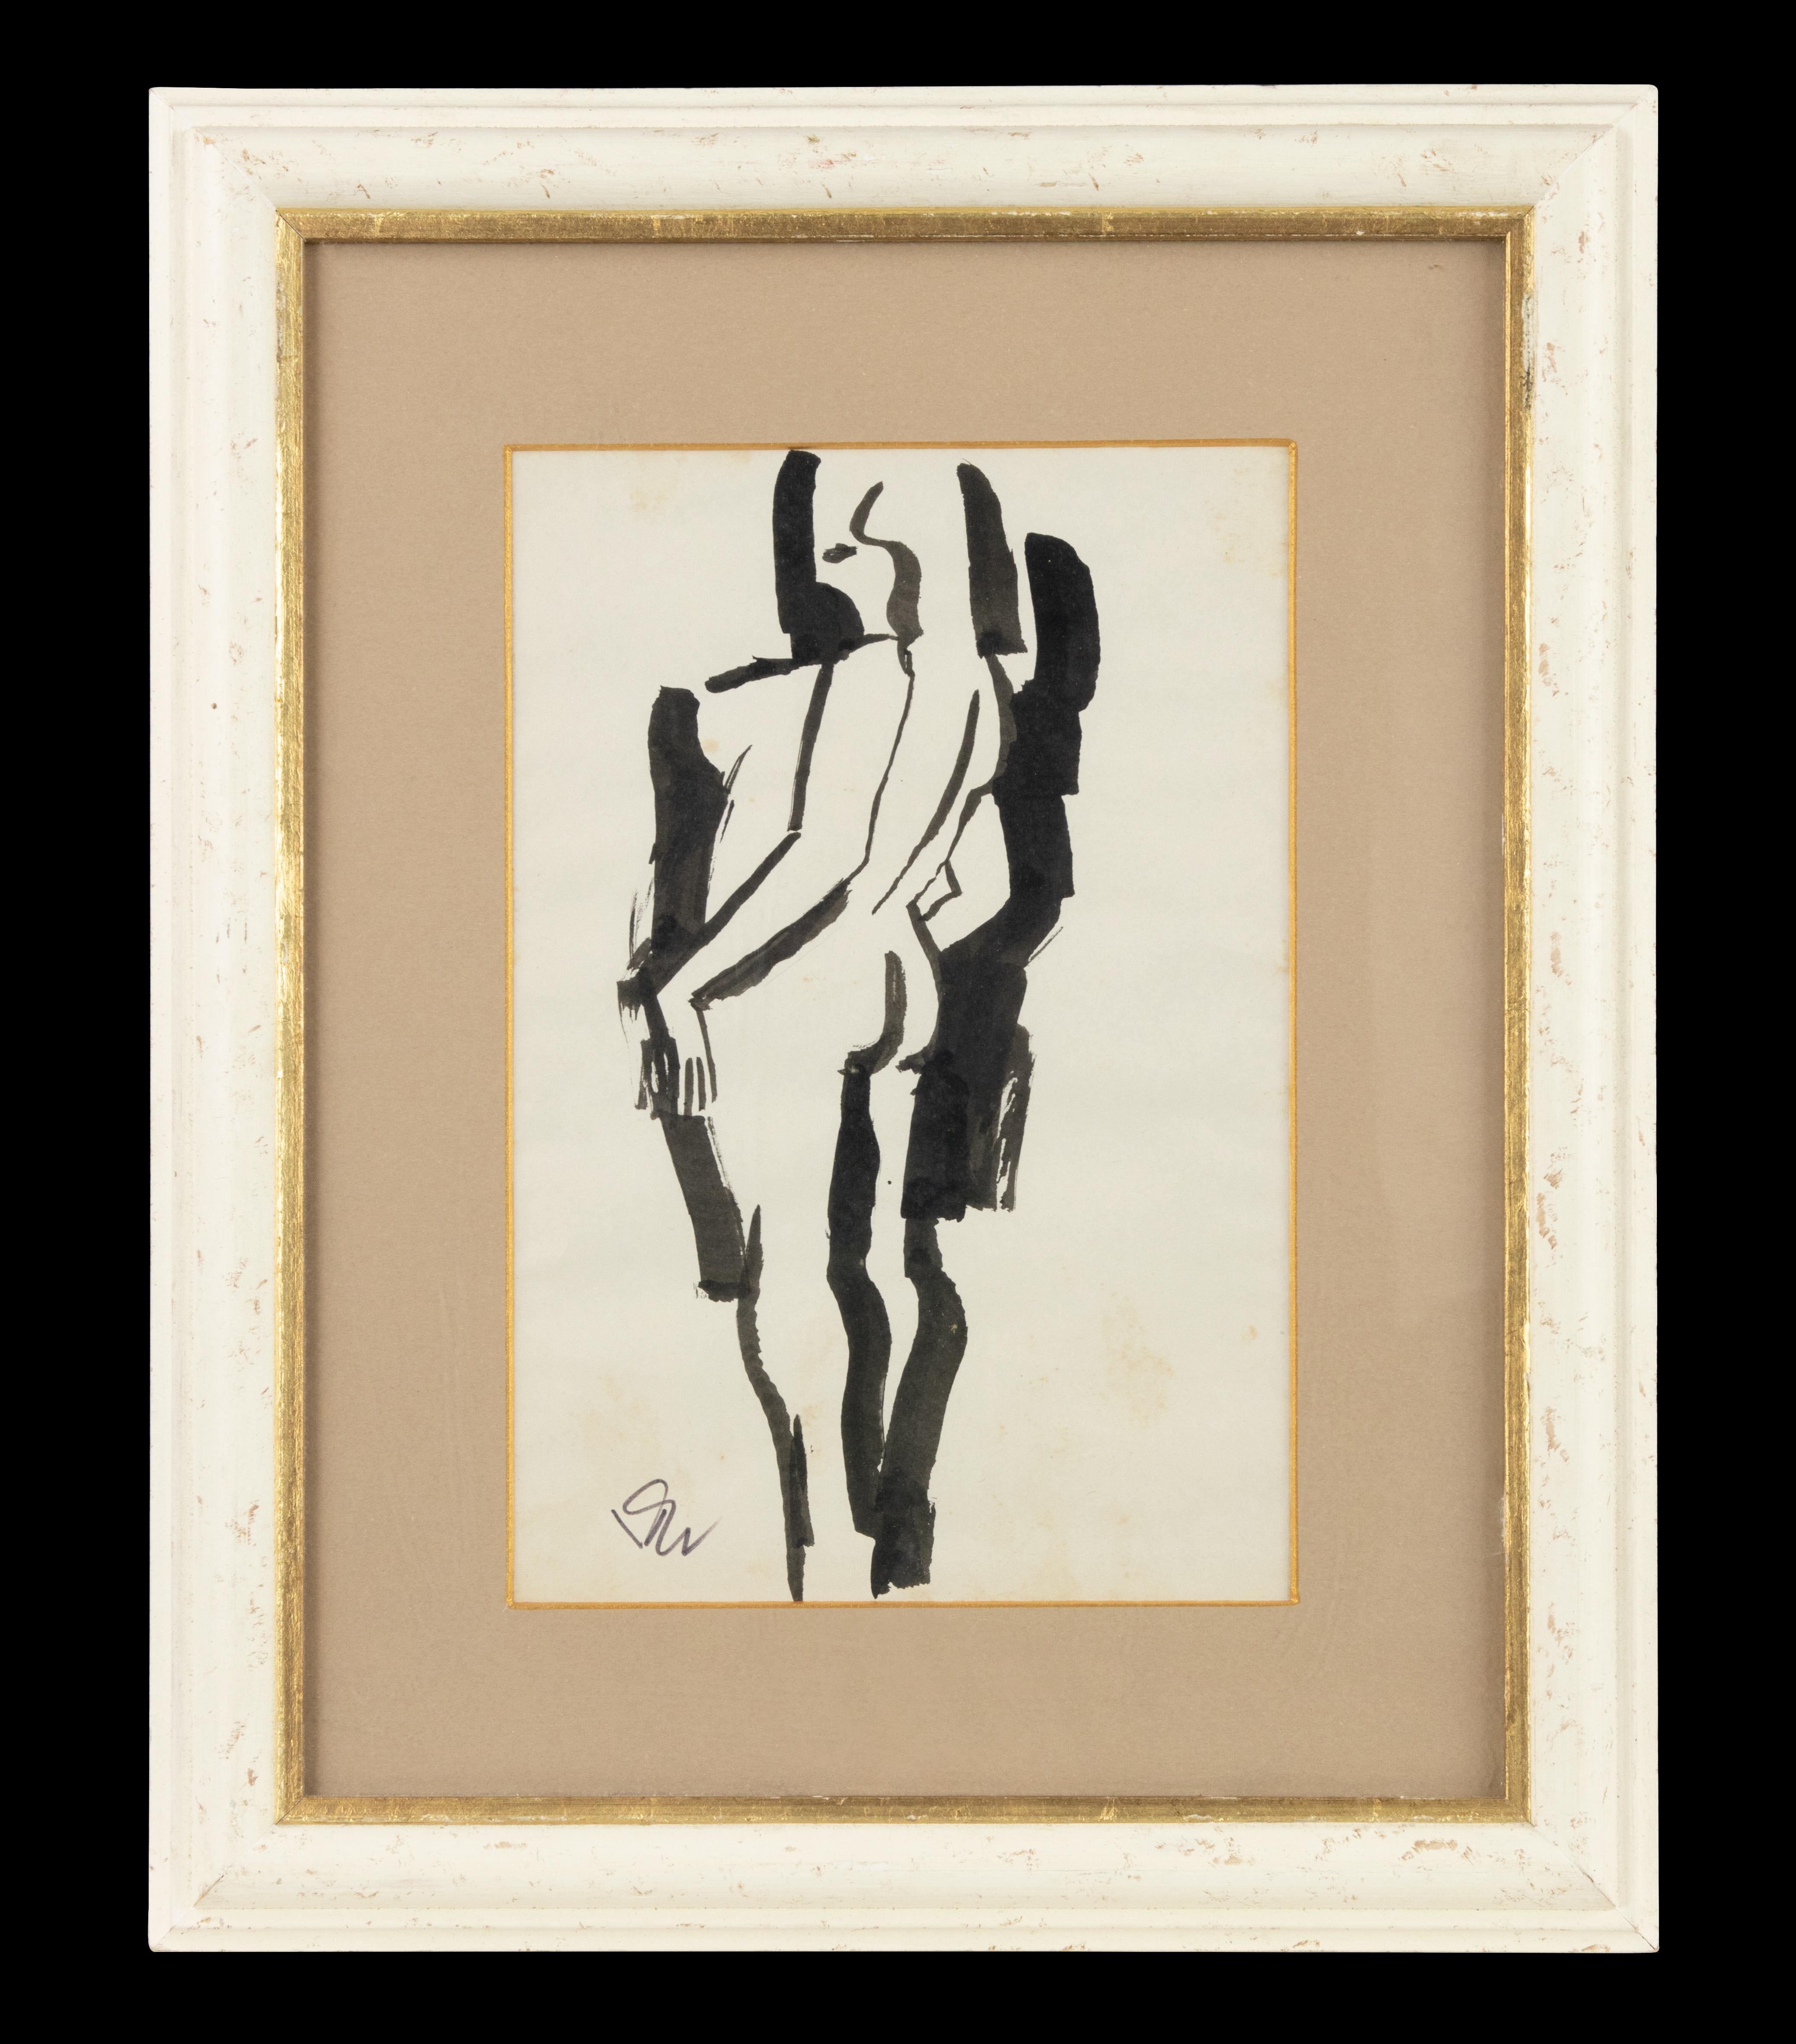 Untitled ist ein modernes Kunstwerk von Remo Brindisi aus den 1970er Jahren.

Schwarz-weiße Porzellan-Tuschezeichnung.

Handsigniert am unteren Rand.

Inklusive Rahmen: 96 x 1,5 x 75 cm